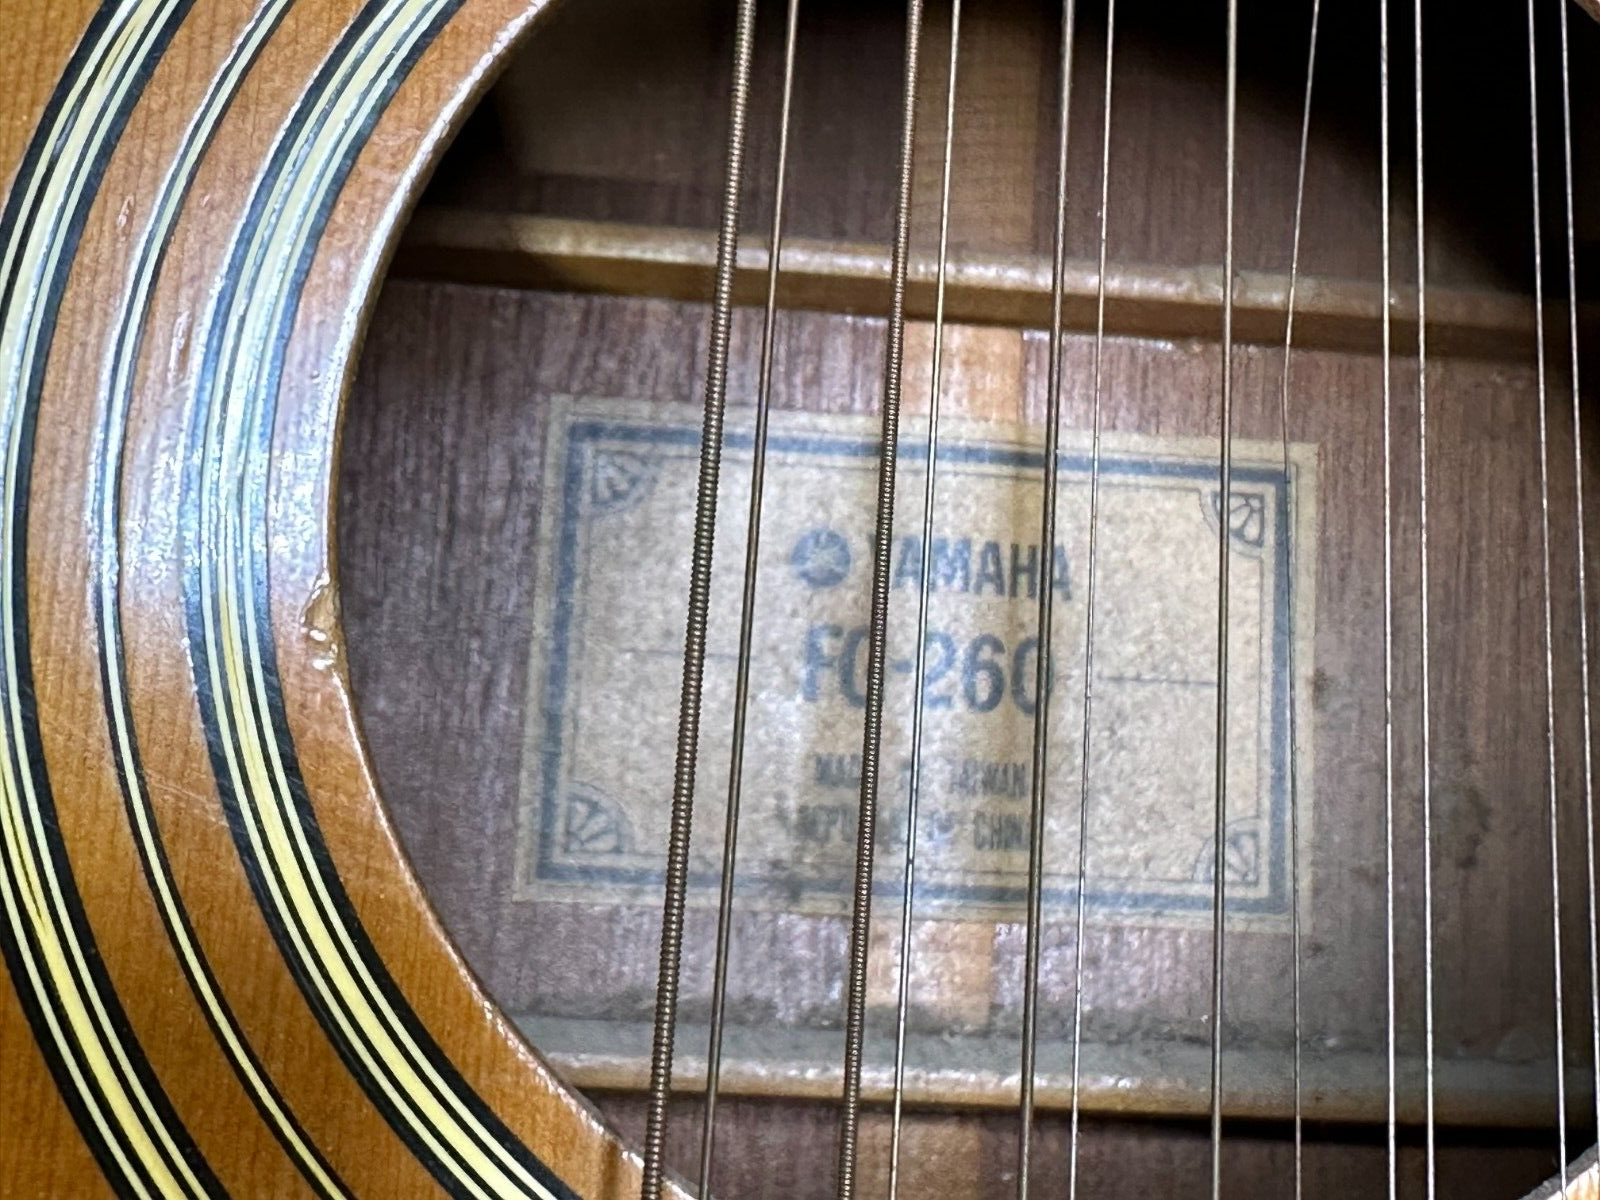 Yamaha FG260 12 String Acoustic Guitar *(LOCAL PICKUP)* 16